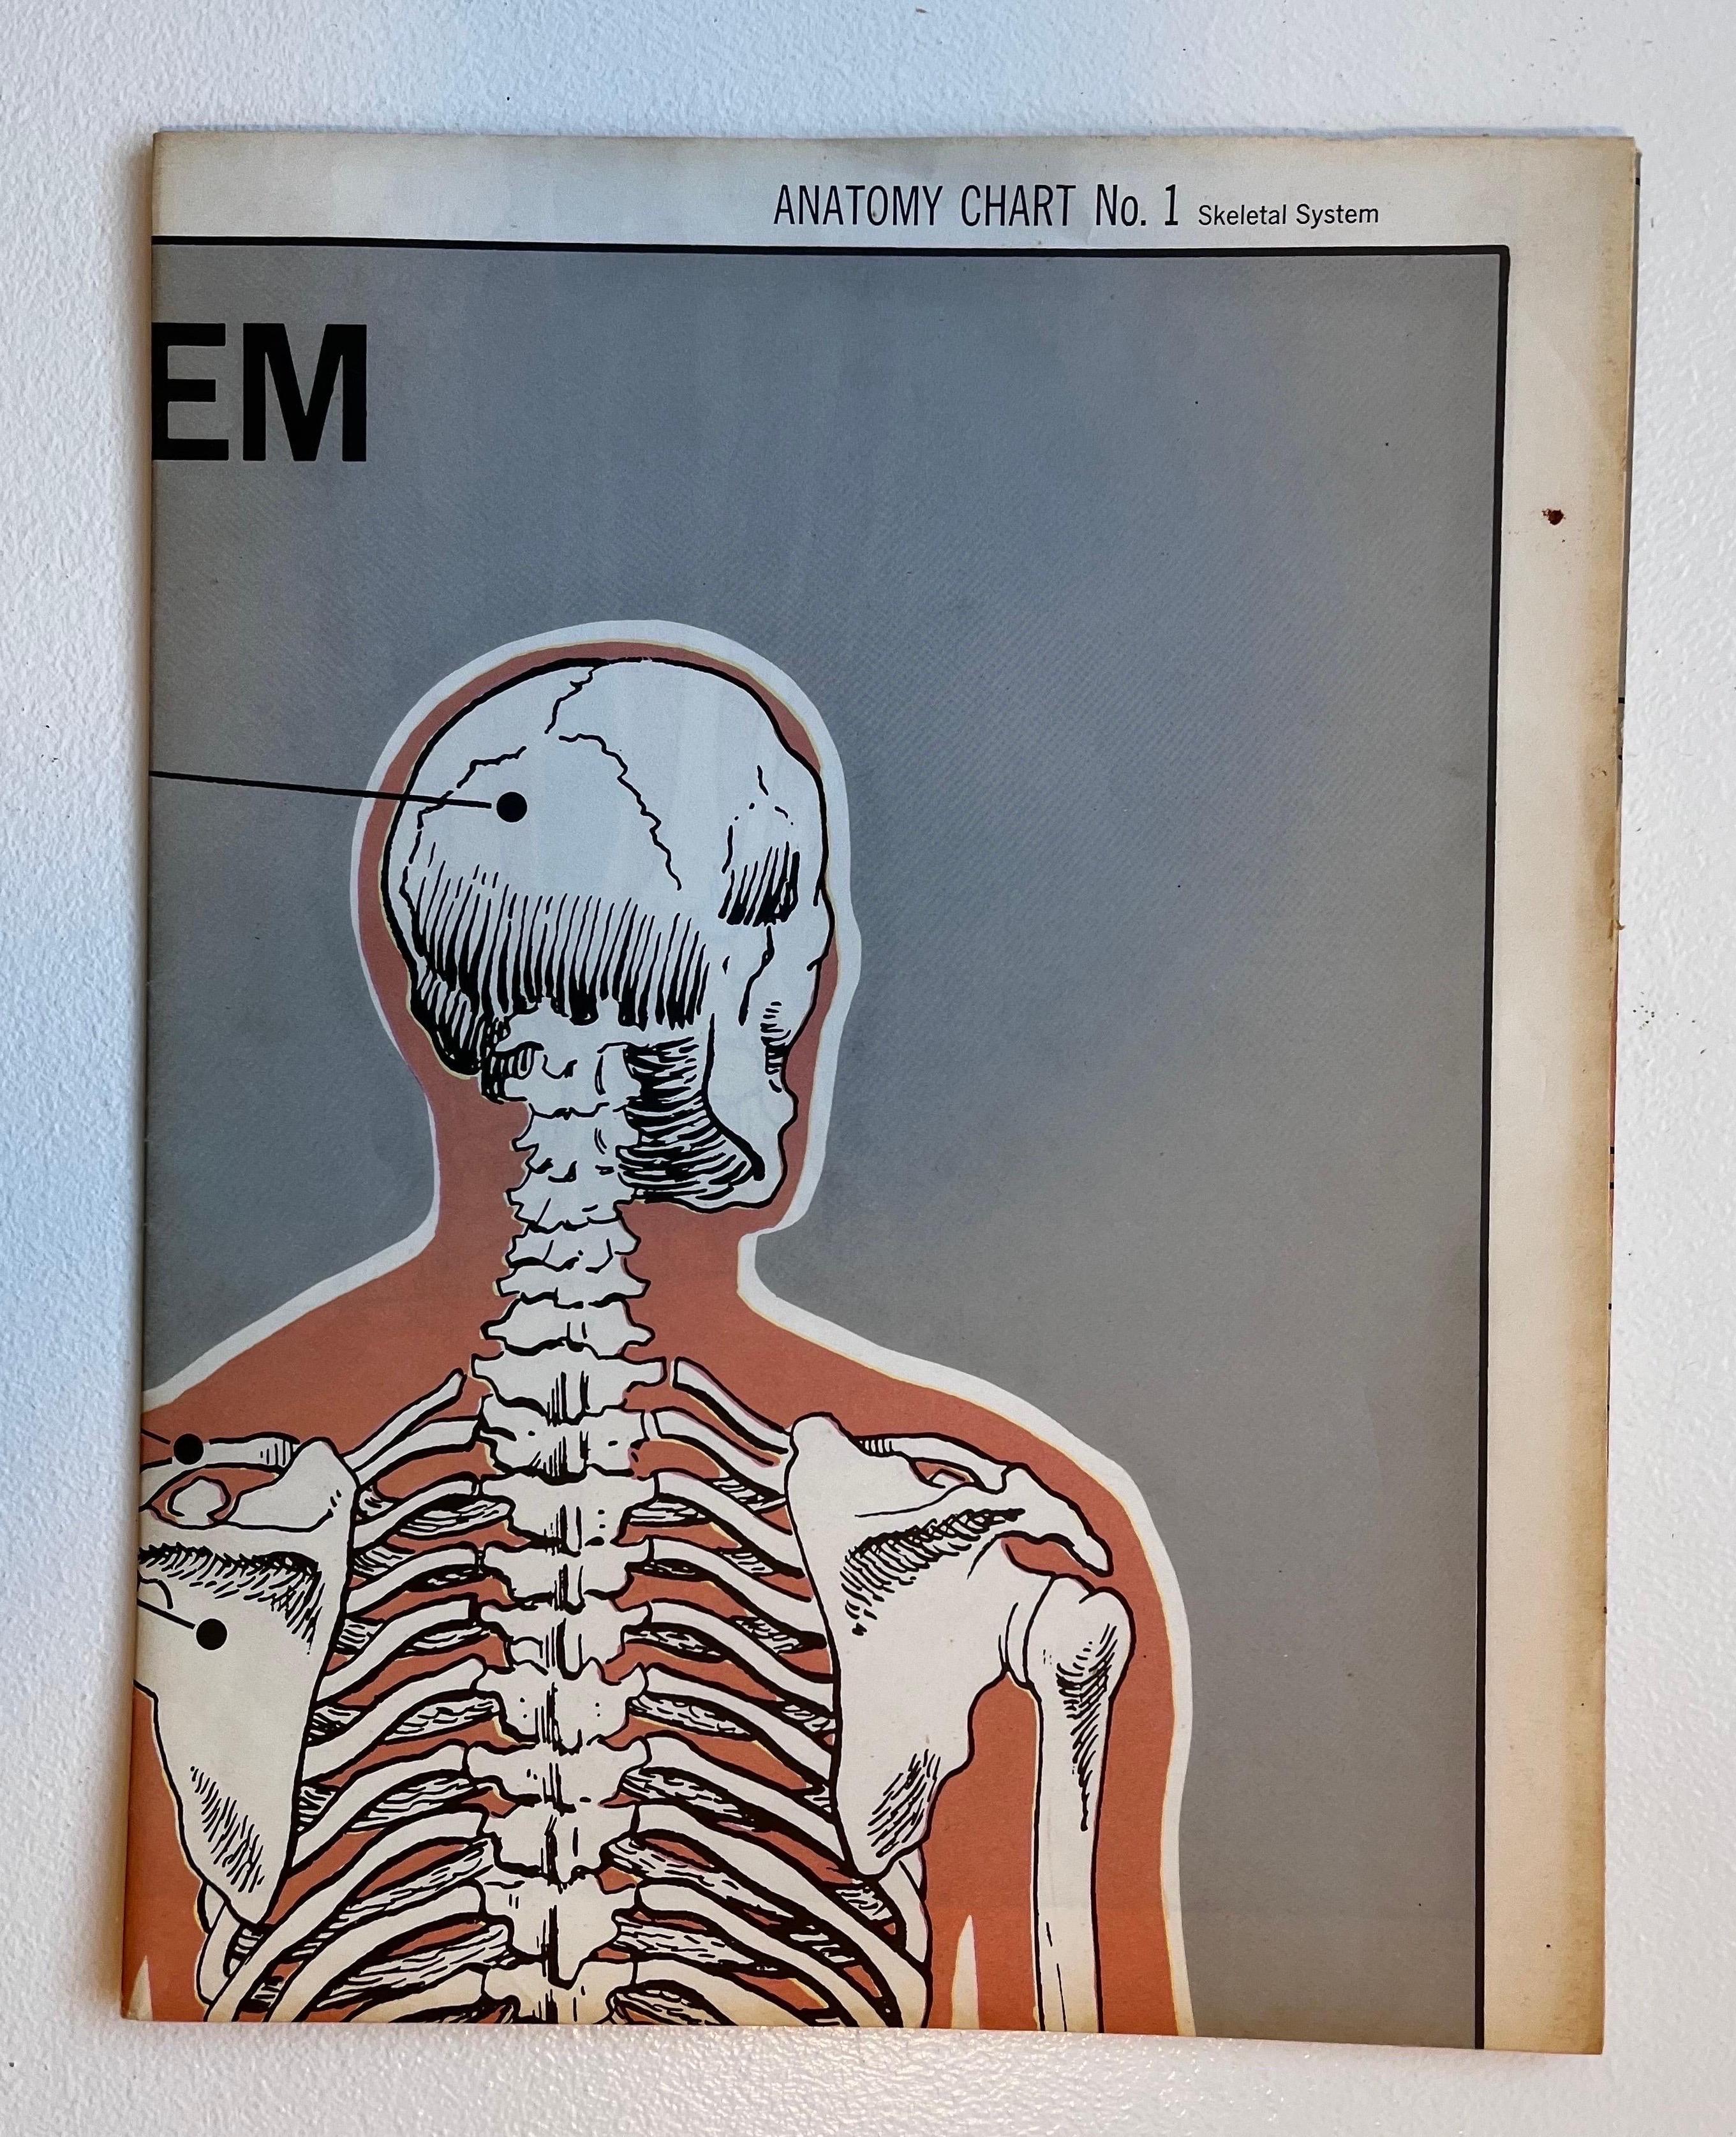 Poster sur le système squelettique par American Map Co. - Circa 1950.

29